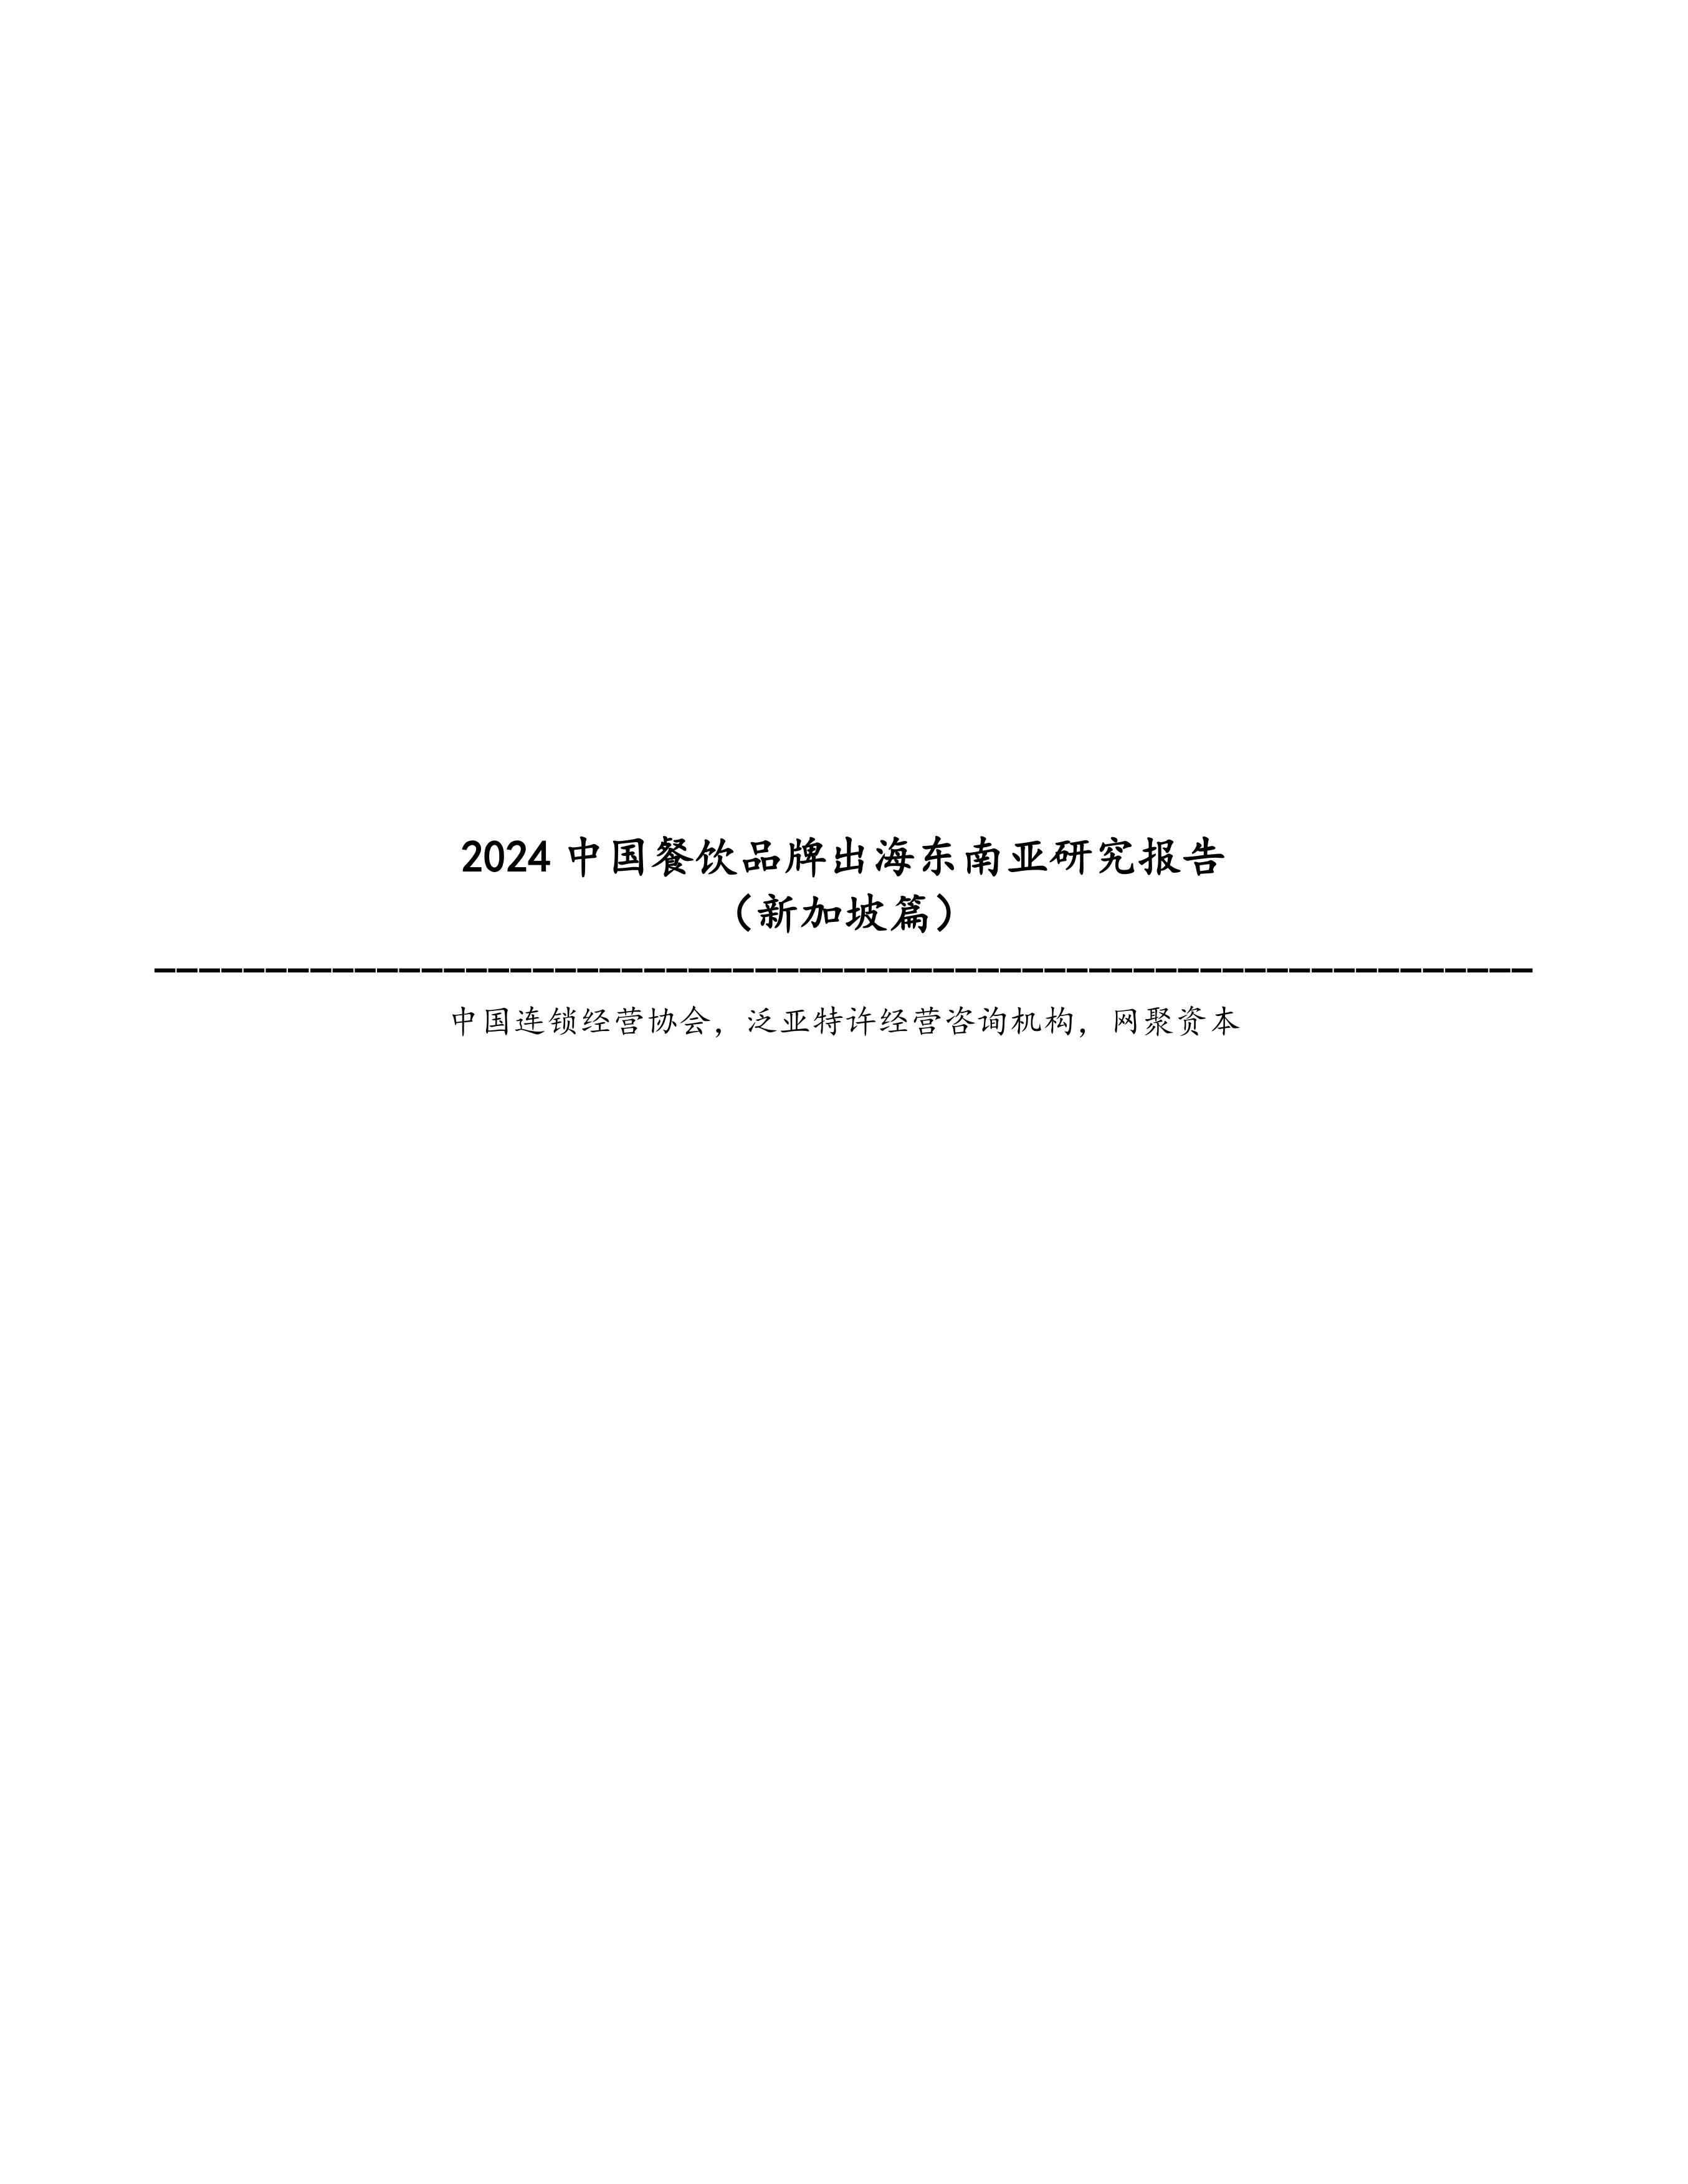 2024中国餐饮品牌出海东南亚研究报告（新加坡篇）-中国连锁经营协会-202404.pdf